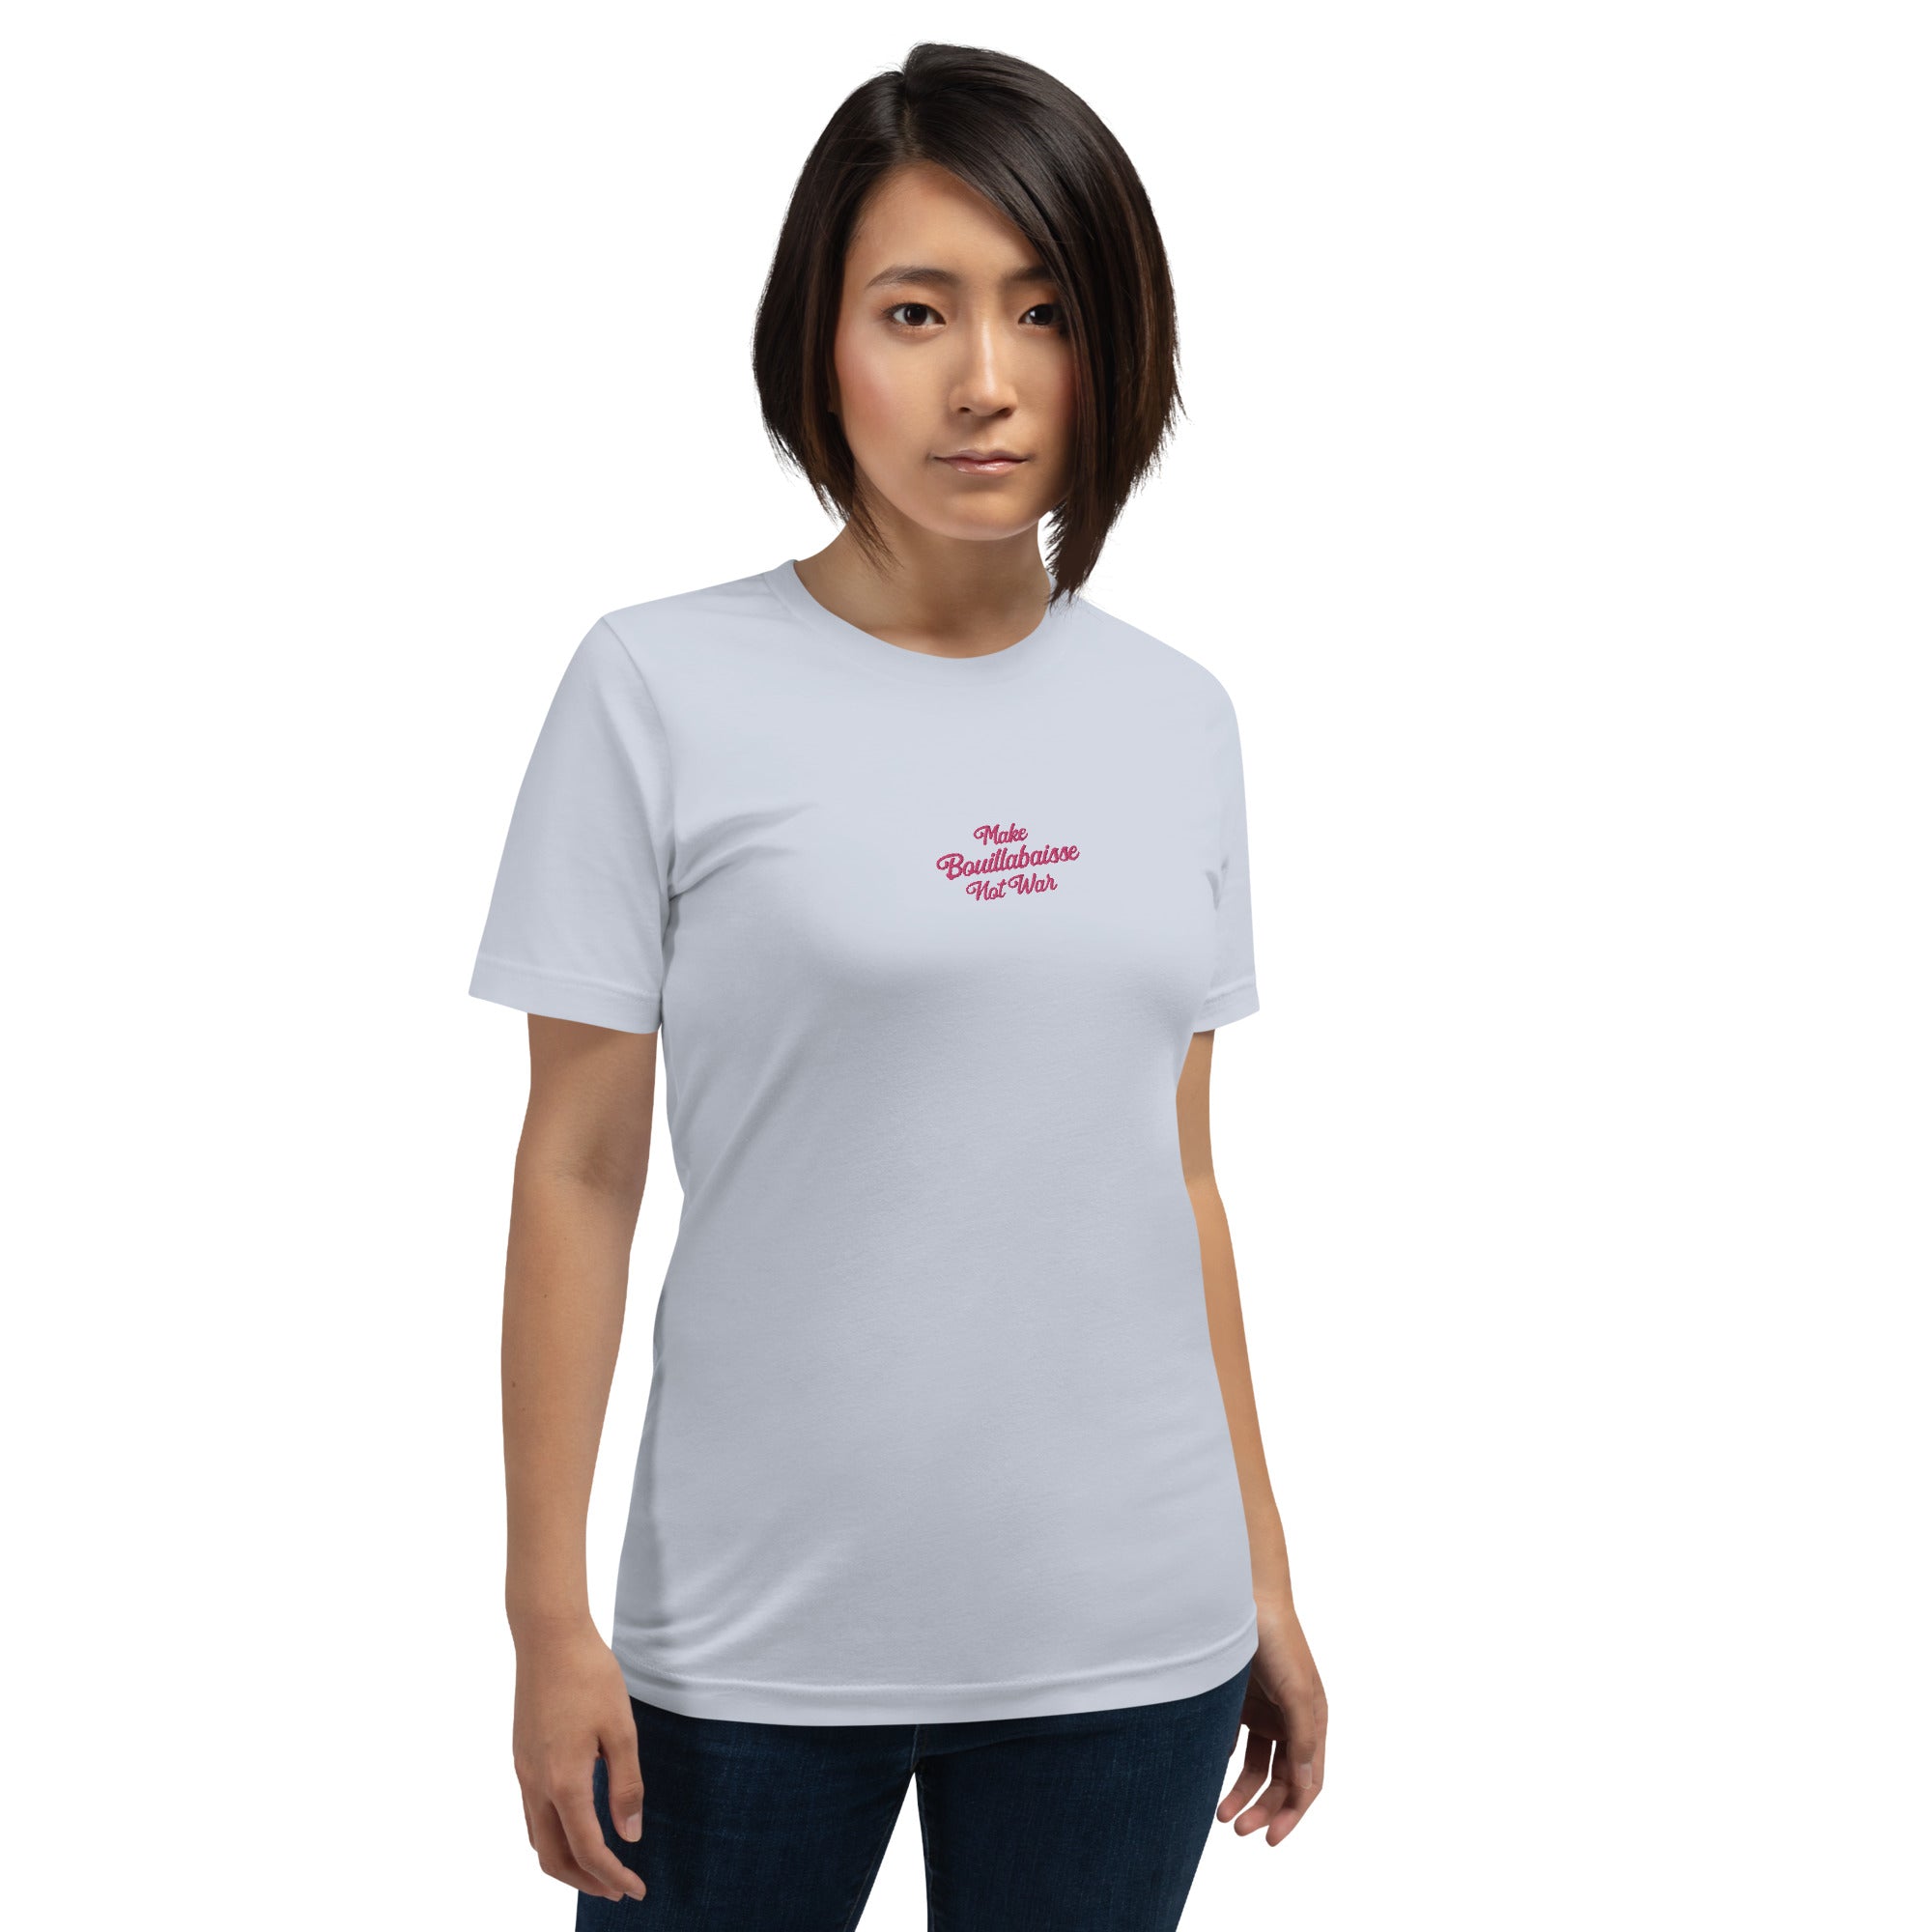 T-shirt en coton unisexe Make Bouillabaisse Not War Text Only brodé flamingo sur couleurs claires